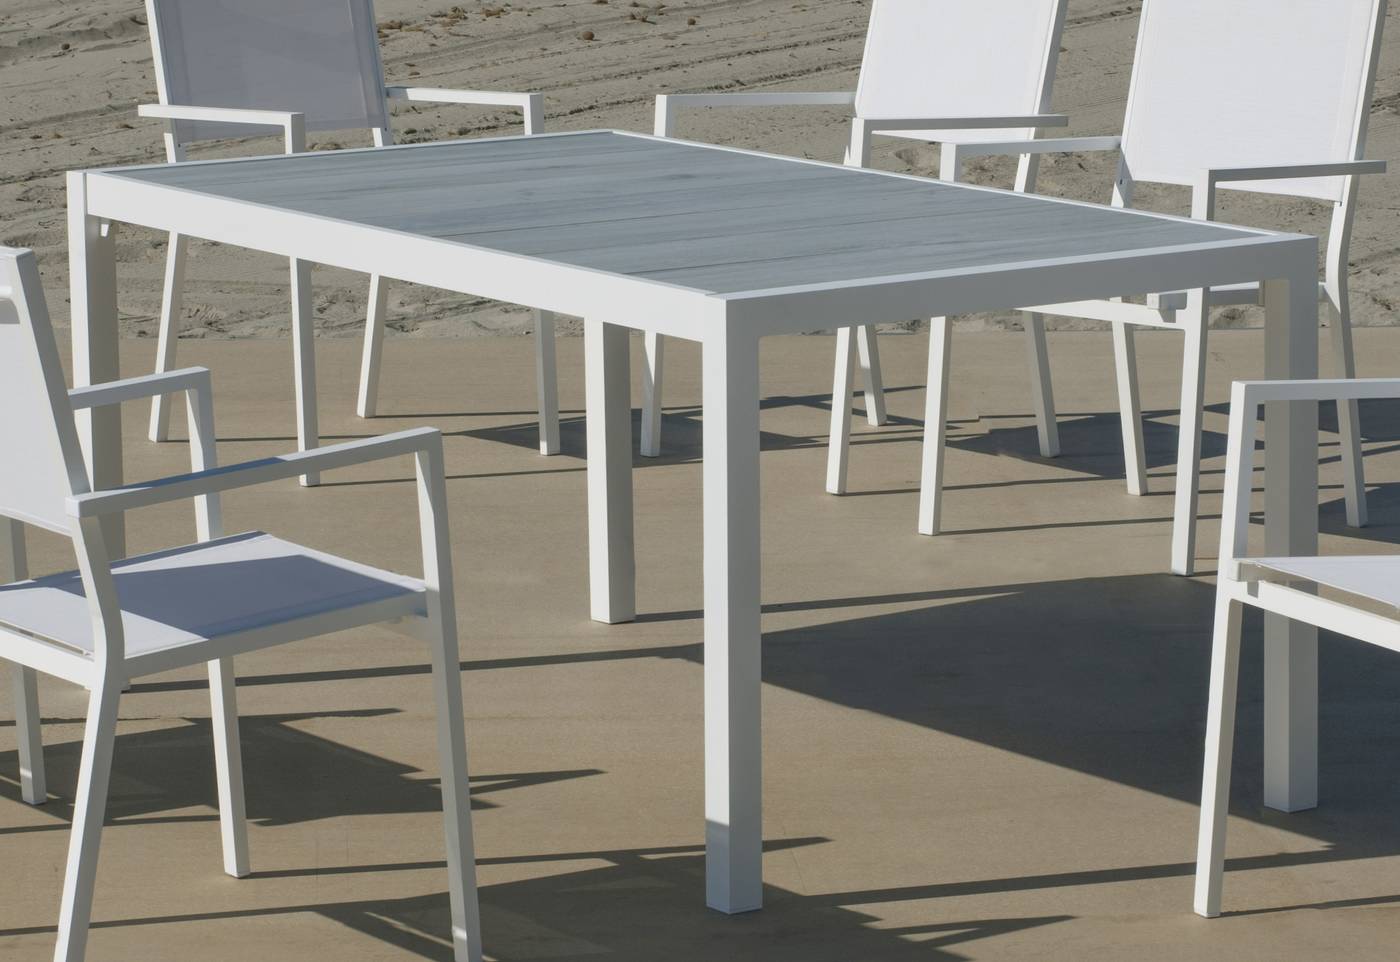 Set Palermo-160-4 Córcega - Conjunto de aluminio para jardín: Mesa rectangular con tablero cerámico de 160 cm + 4 sillones de textilen. Colores: blanco y antracita.